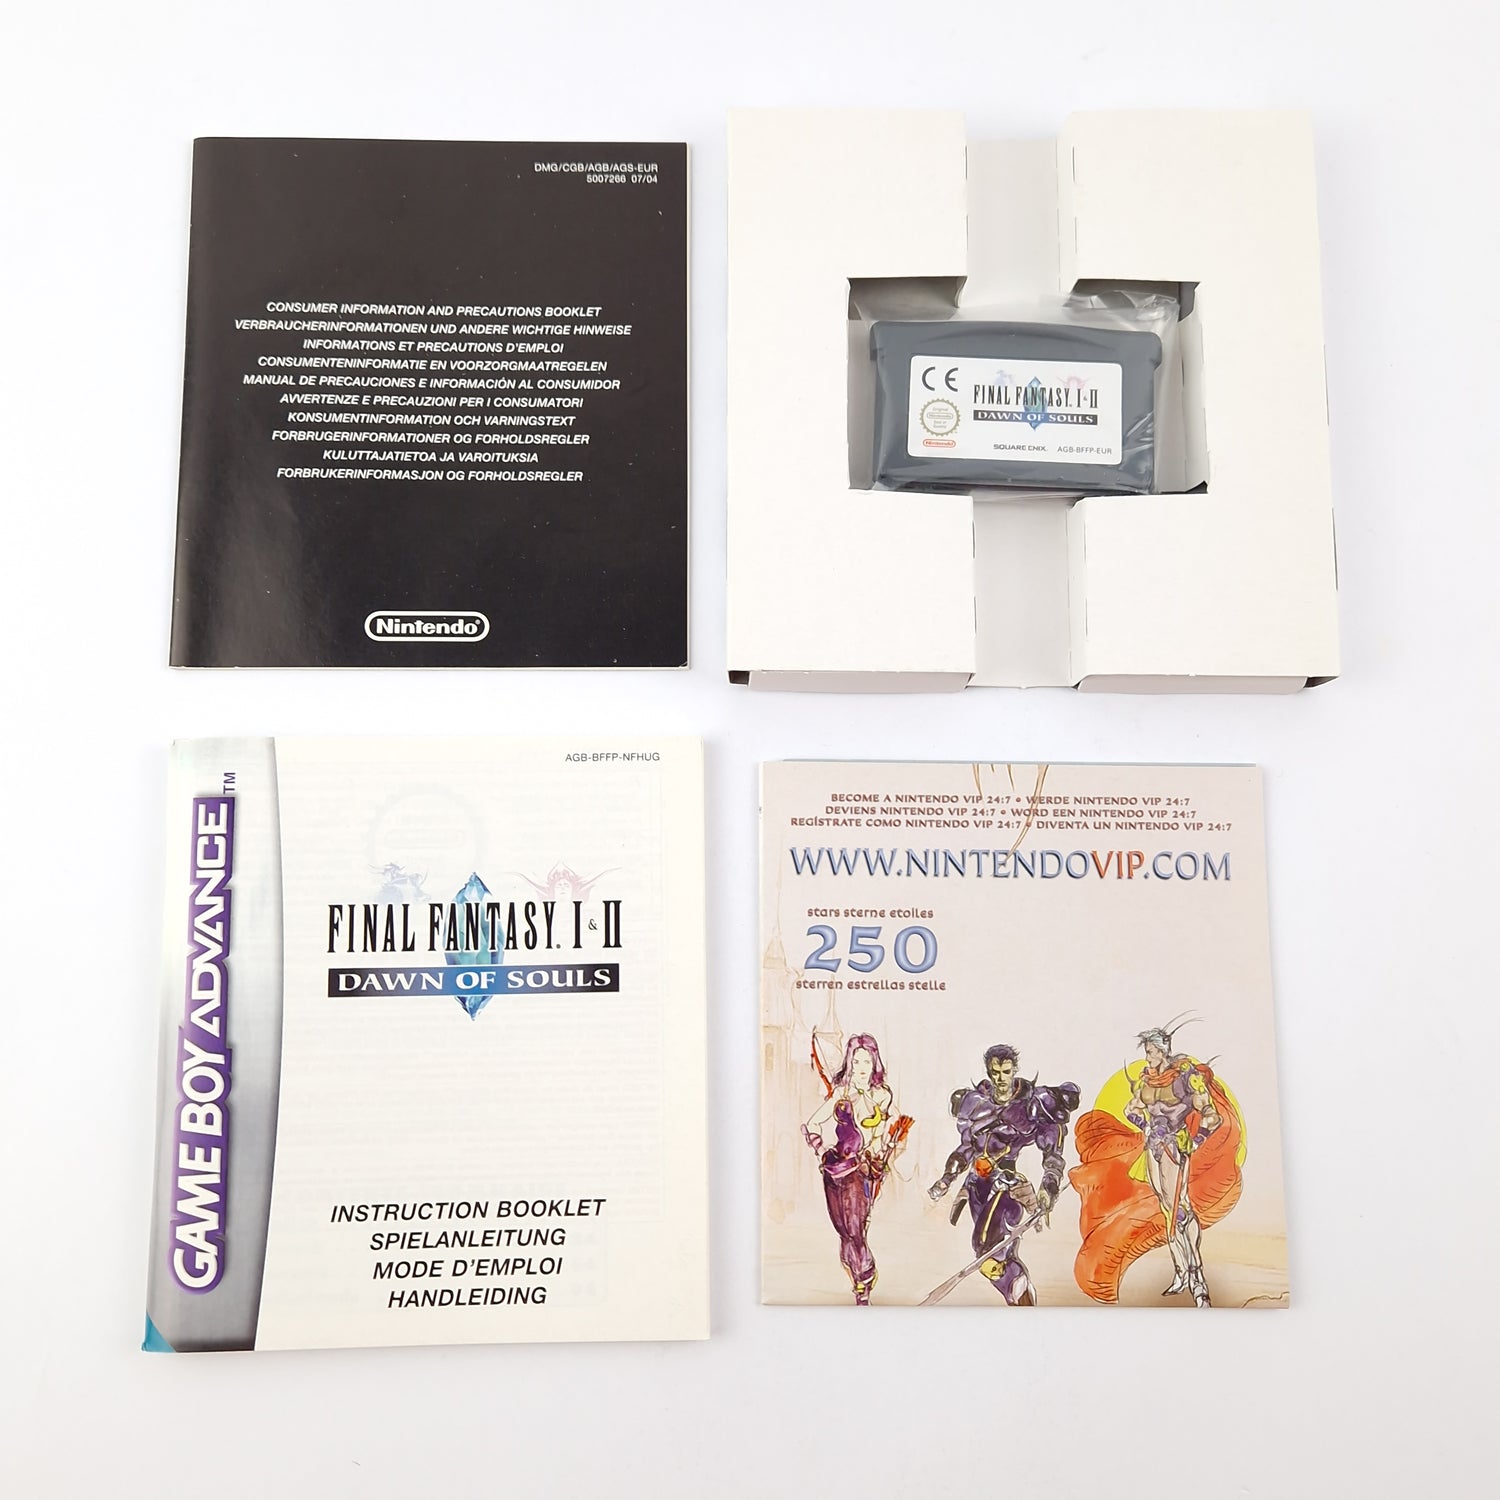 Nintendo Game Boy Advance Game: Final Fantasy I & II Dawn of Souls - OVP GBA